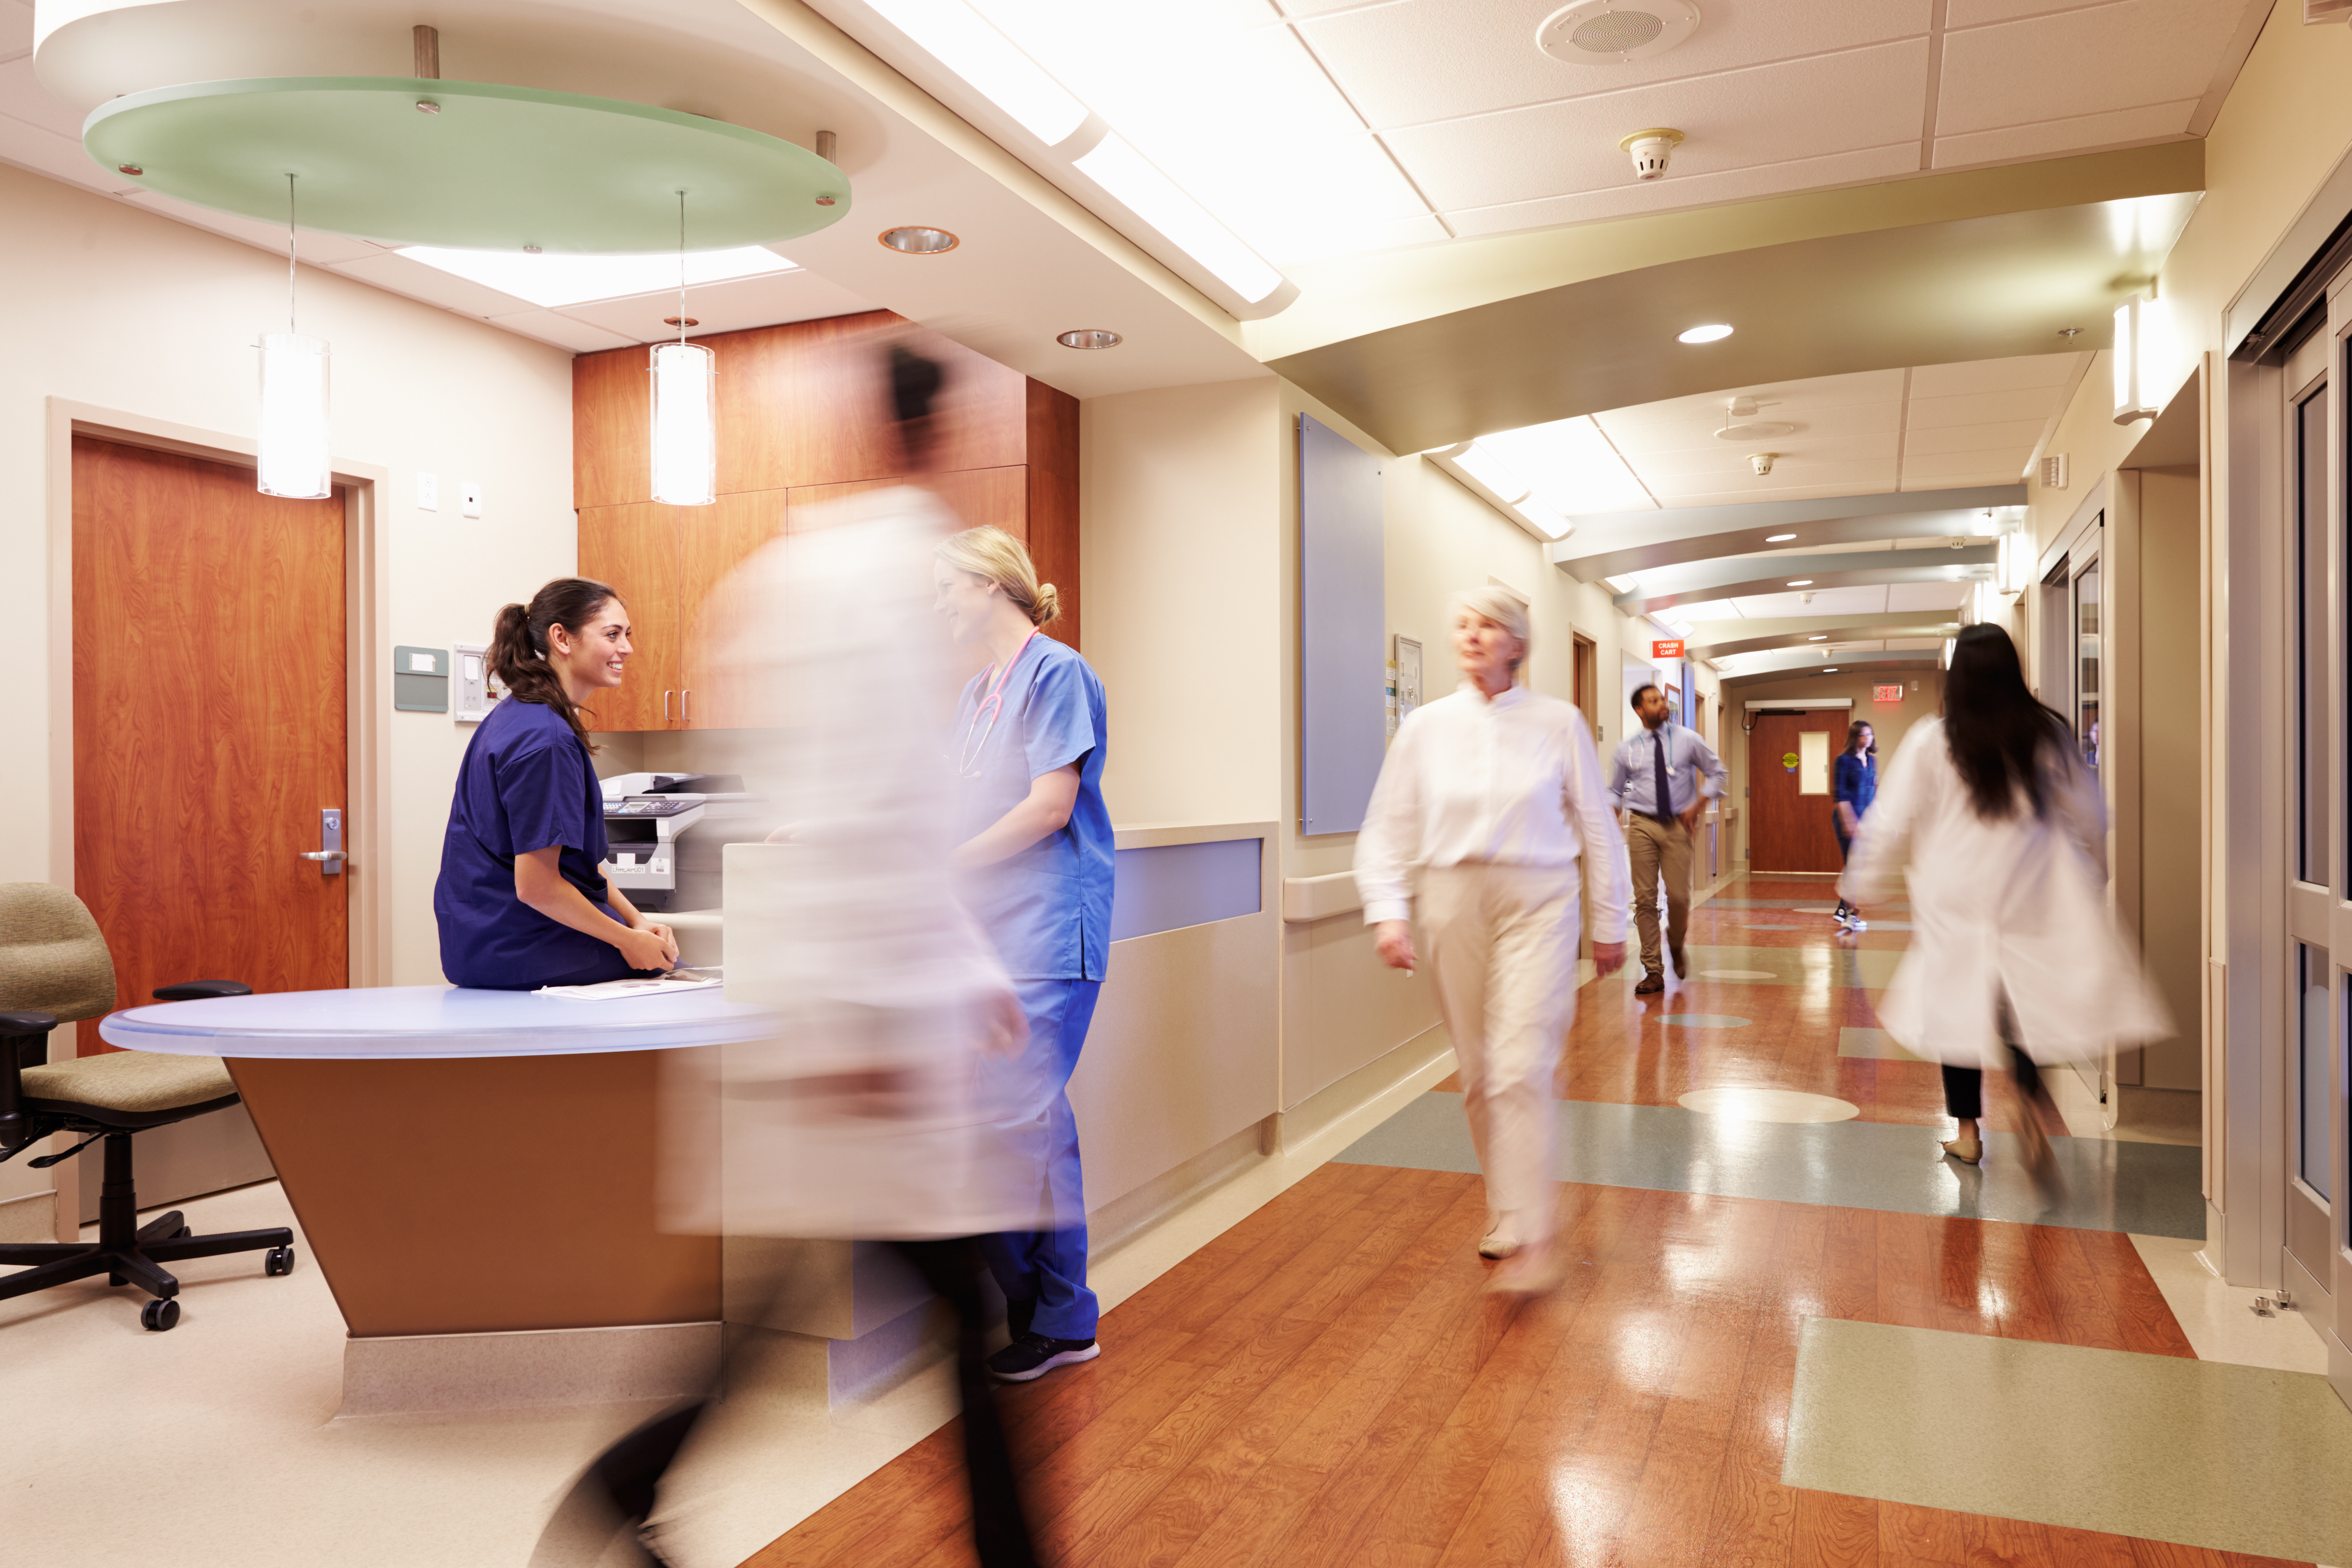 People walking inside a hospital | Source: Shutterstock